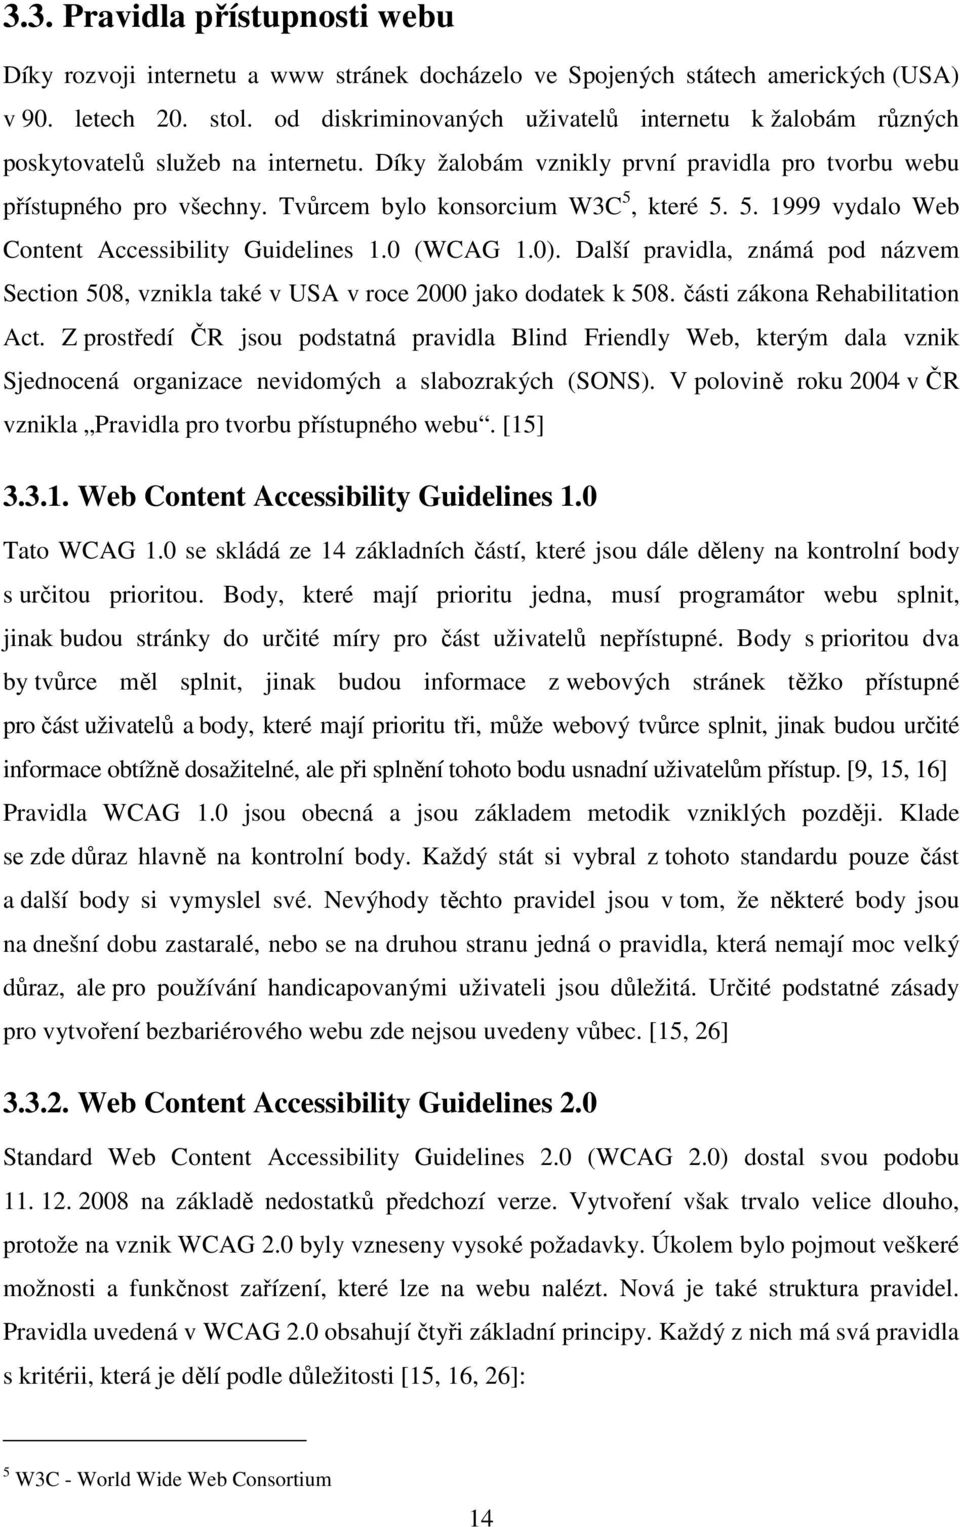 Tvůrcem bylo konsorcium W3C 5, které 5. 5. 1999 vydalo Web Content Accessibility Guidelines 1.0 (WCAG 1.0).